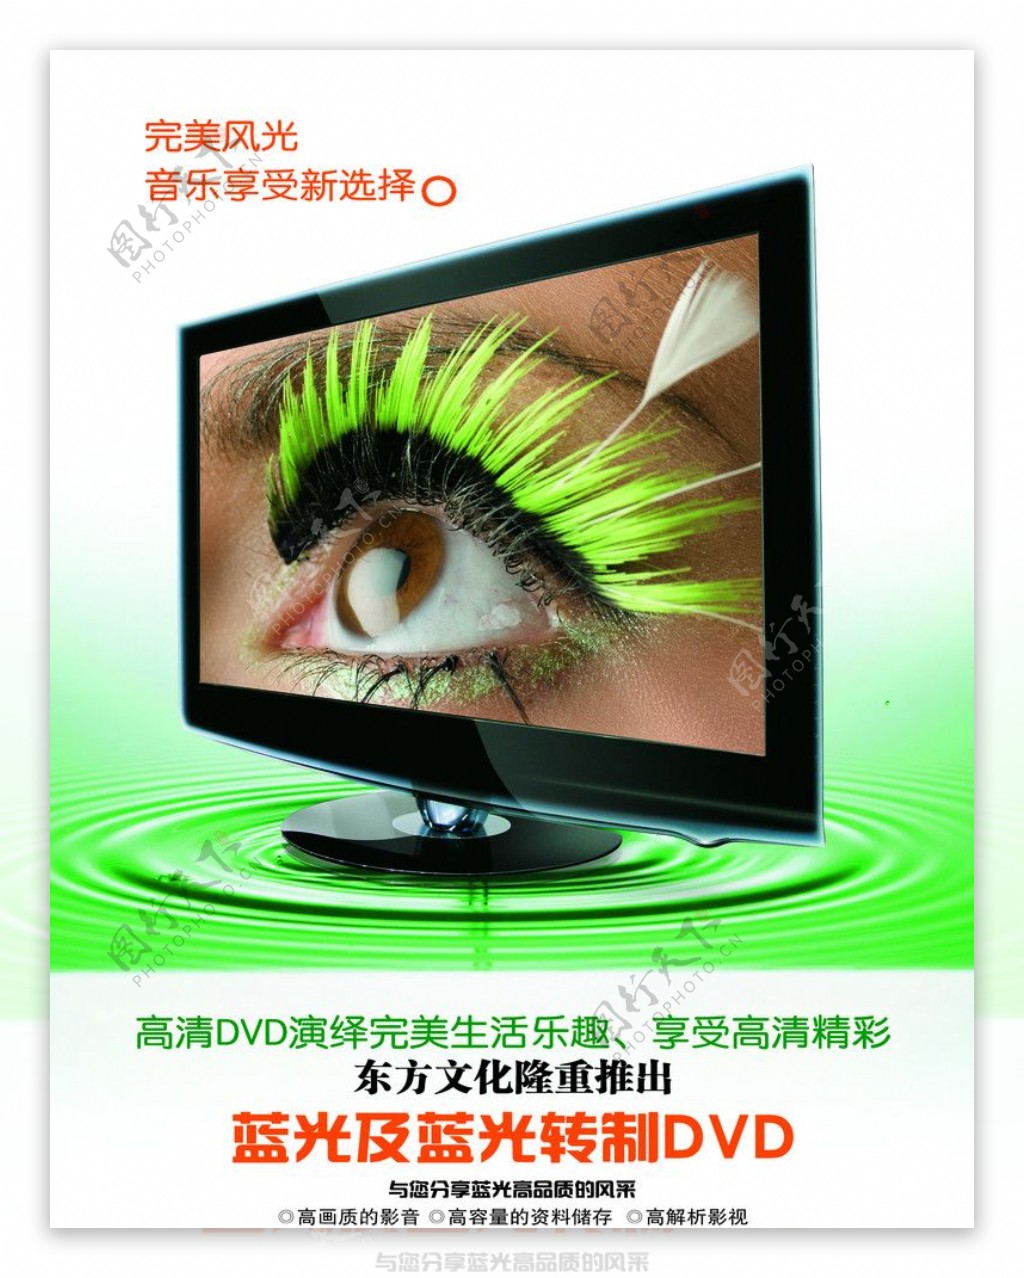 高清DVD液晶显示器图片